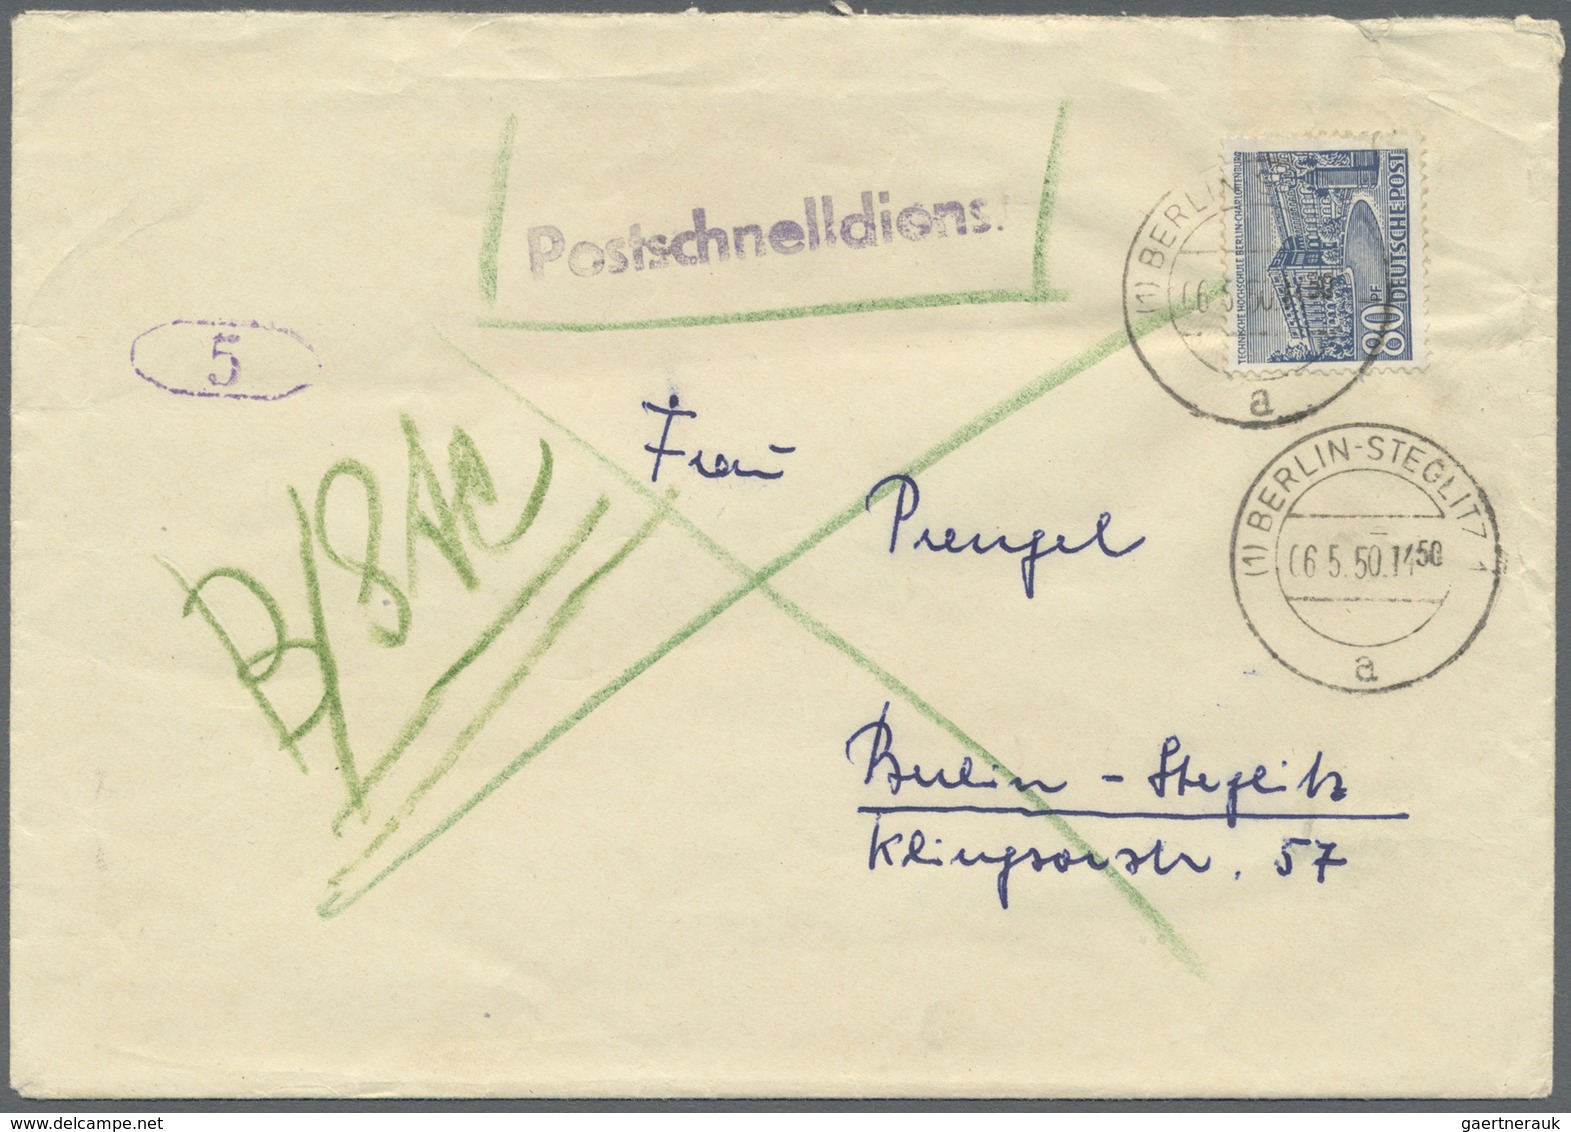 Br Berlin - Postschnelldienst: 1950:  Schnelldienstbrief 80 Pfennig Bauten Als EF Berlin-Steglitz 1 6.5 - Storia Postale